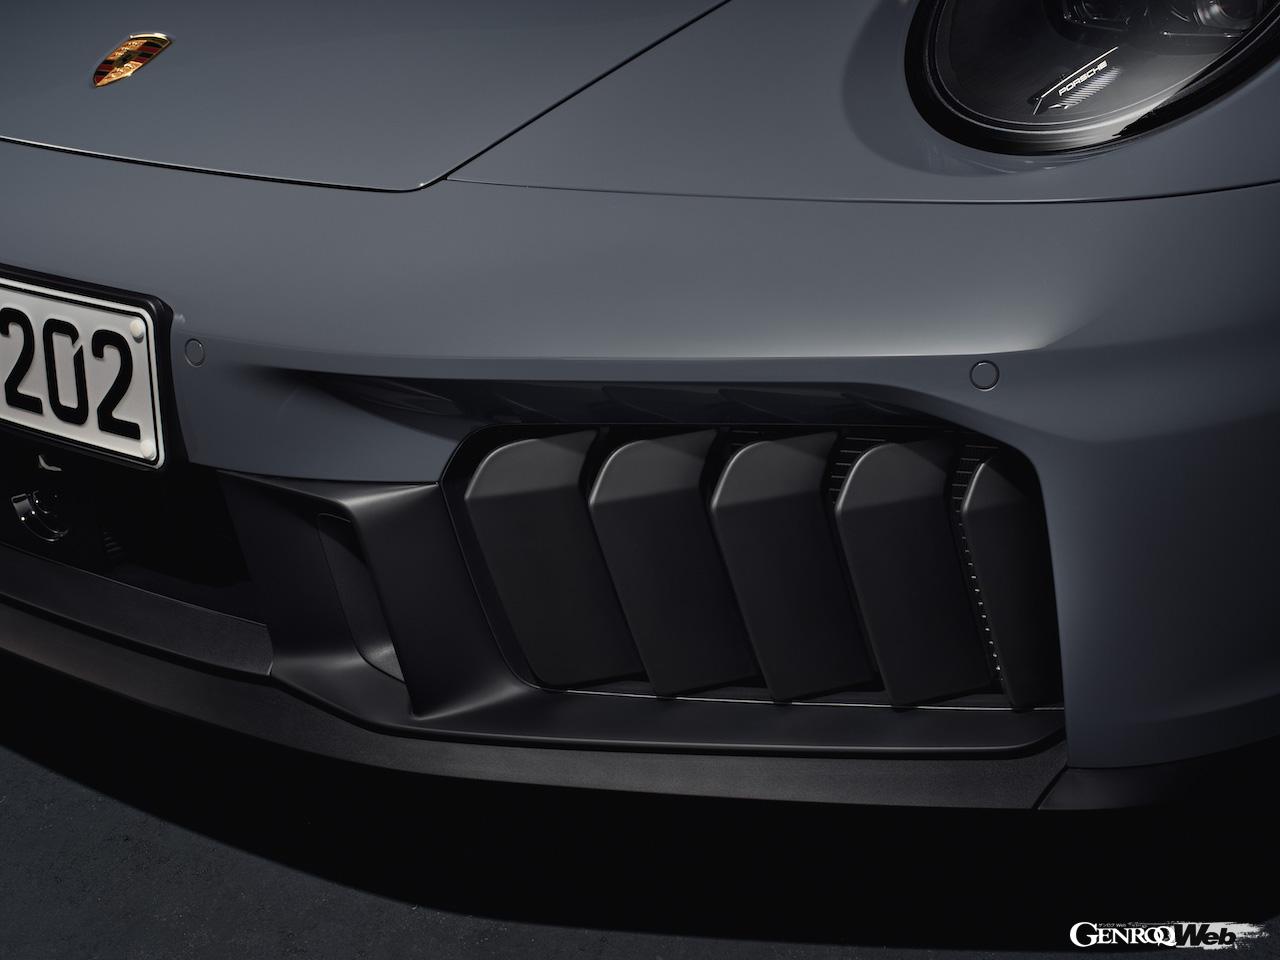 「新開発「T-ハイブリッド」を搭載した「ポルシェ 911 GTS」がデビュー「最高出力システム541PS」【動画】」の25枚めの画像